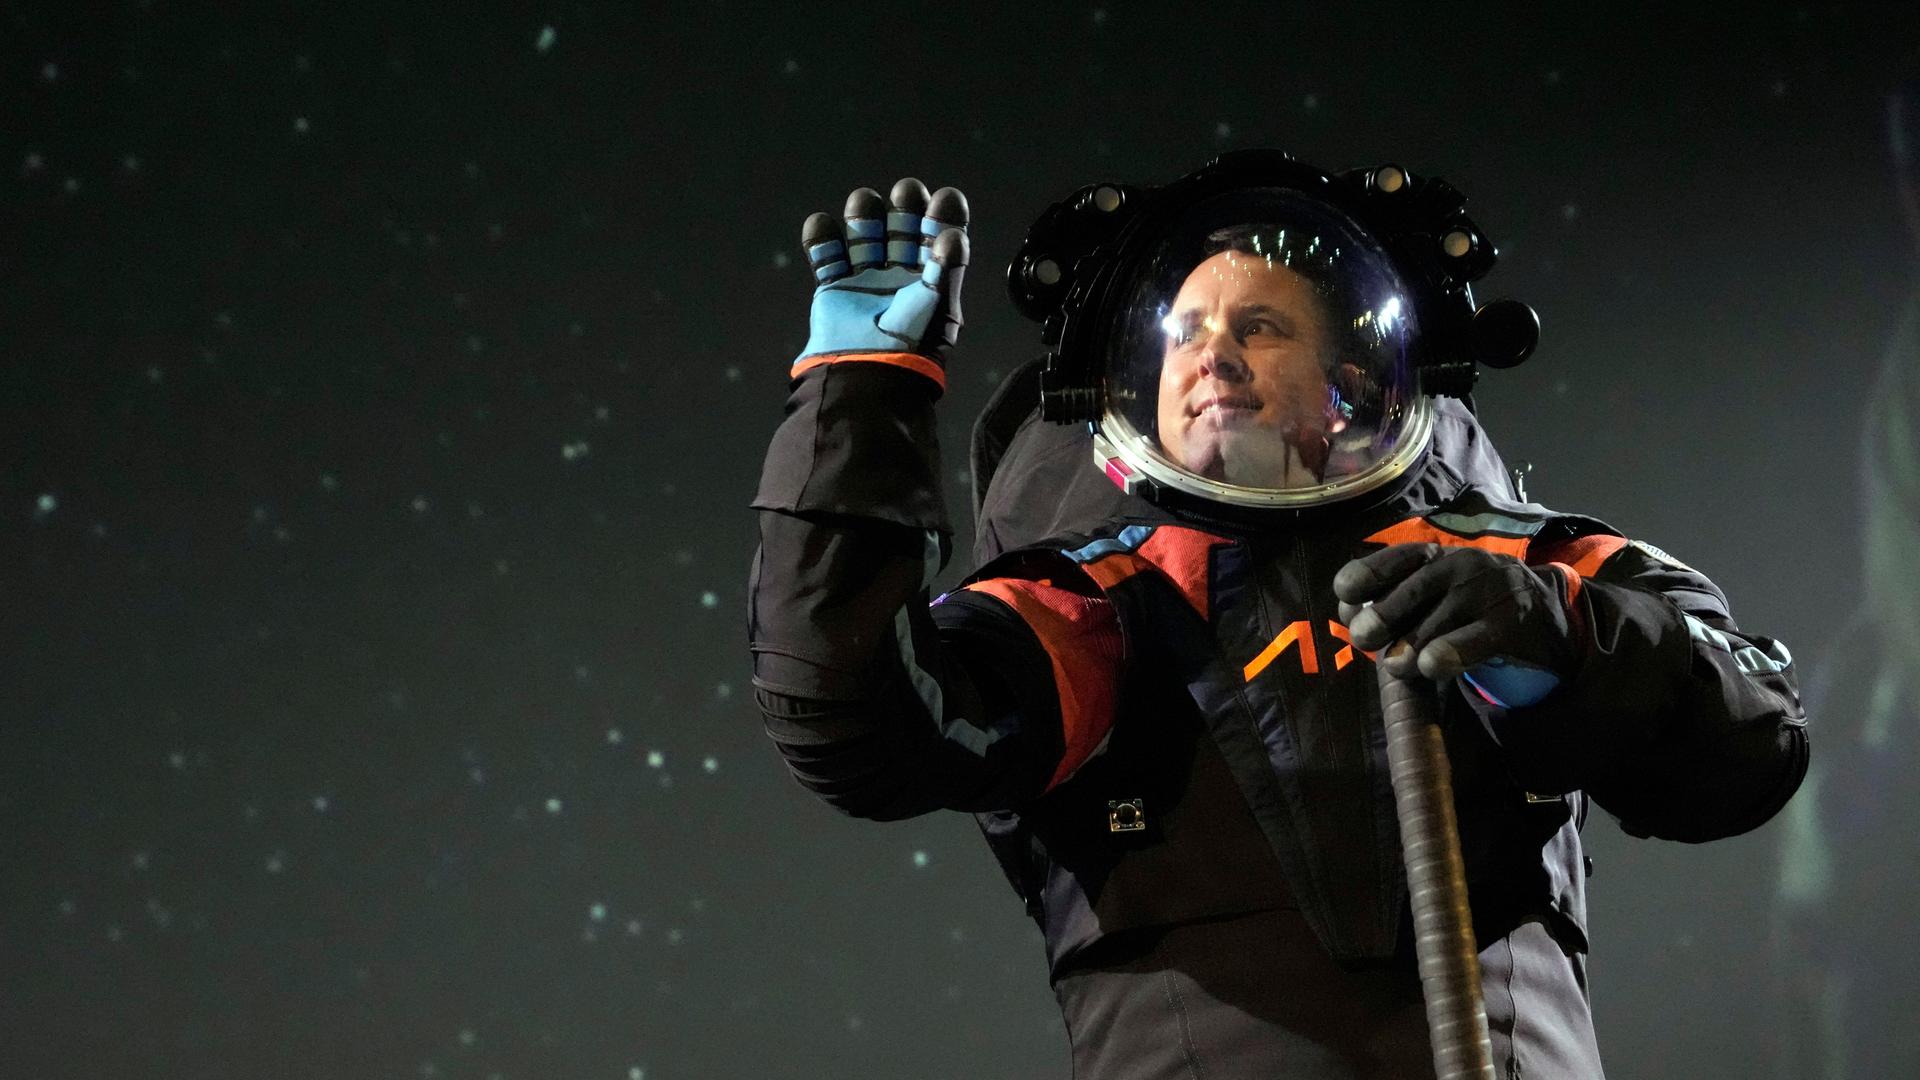 Jim Stein, Chefingenieur der Firma Axiom Space, trägt den Prototyp eines neuen Raumanzugs für die NASA.